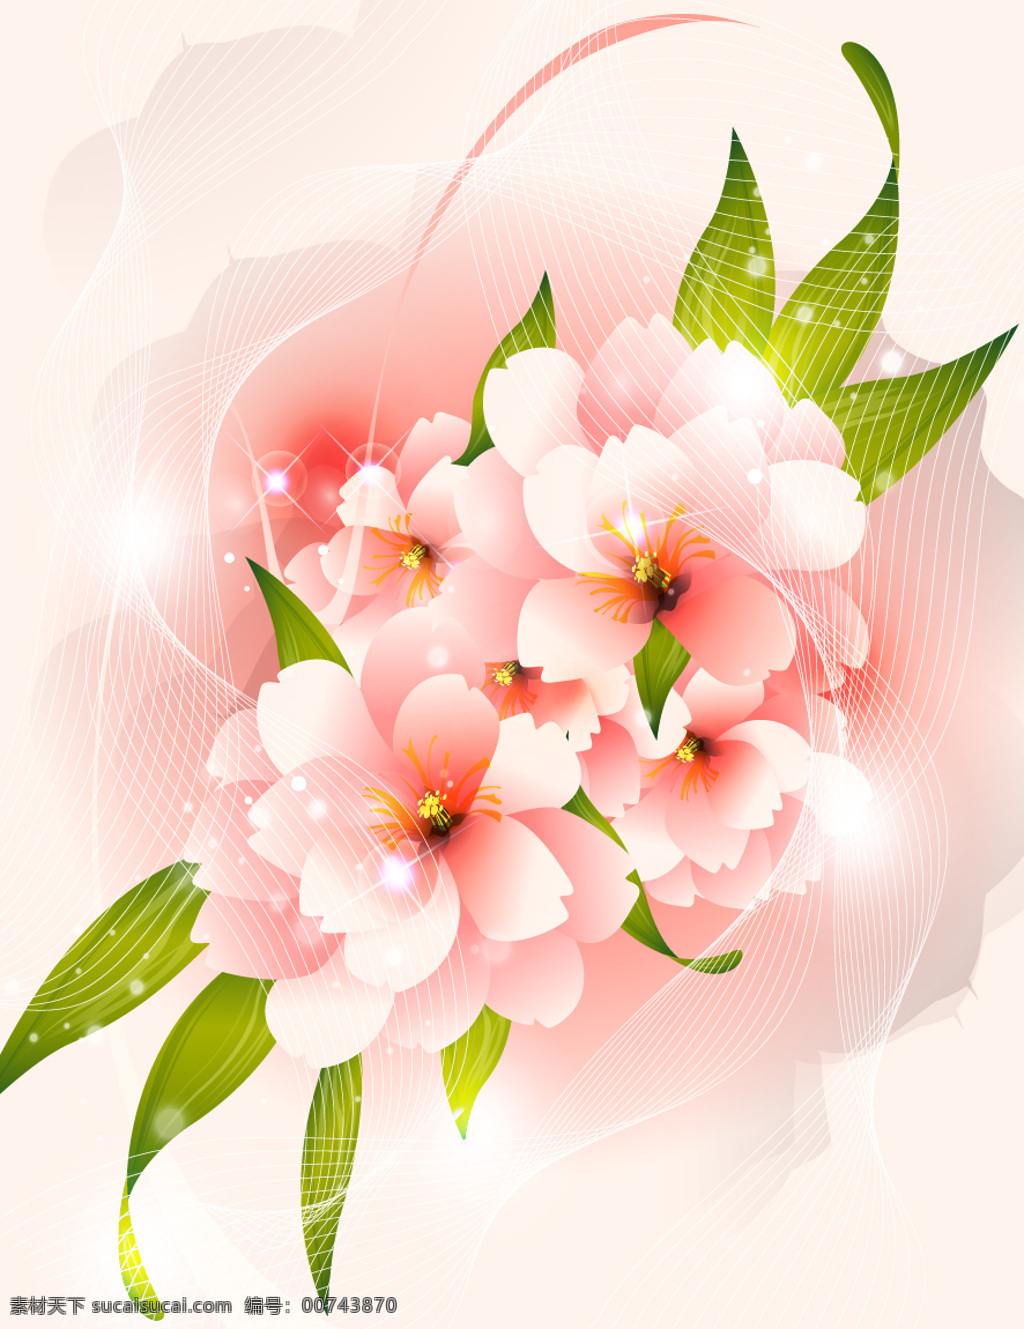 矢量 粉色 花卉 背景 矢量粉色花卉 花卉素材背景 粉色花卉